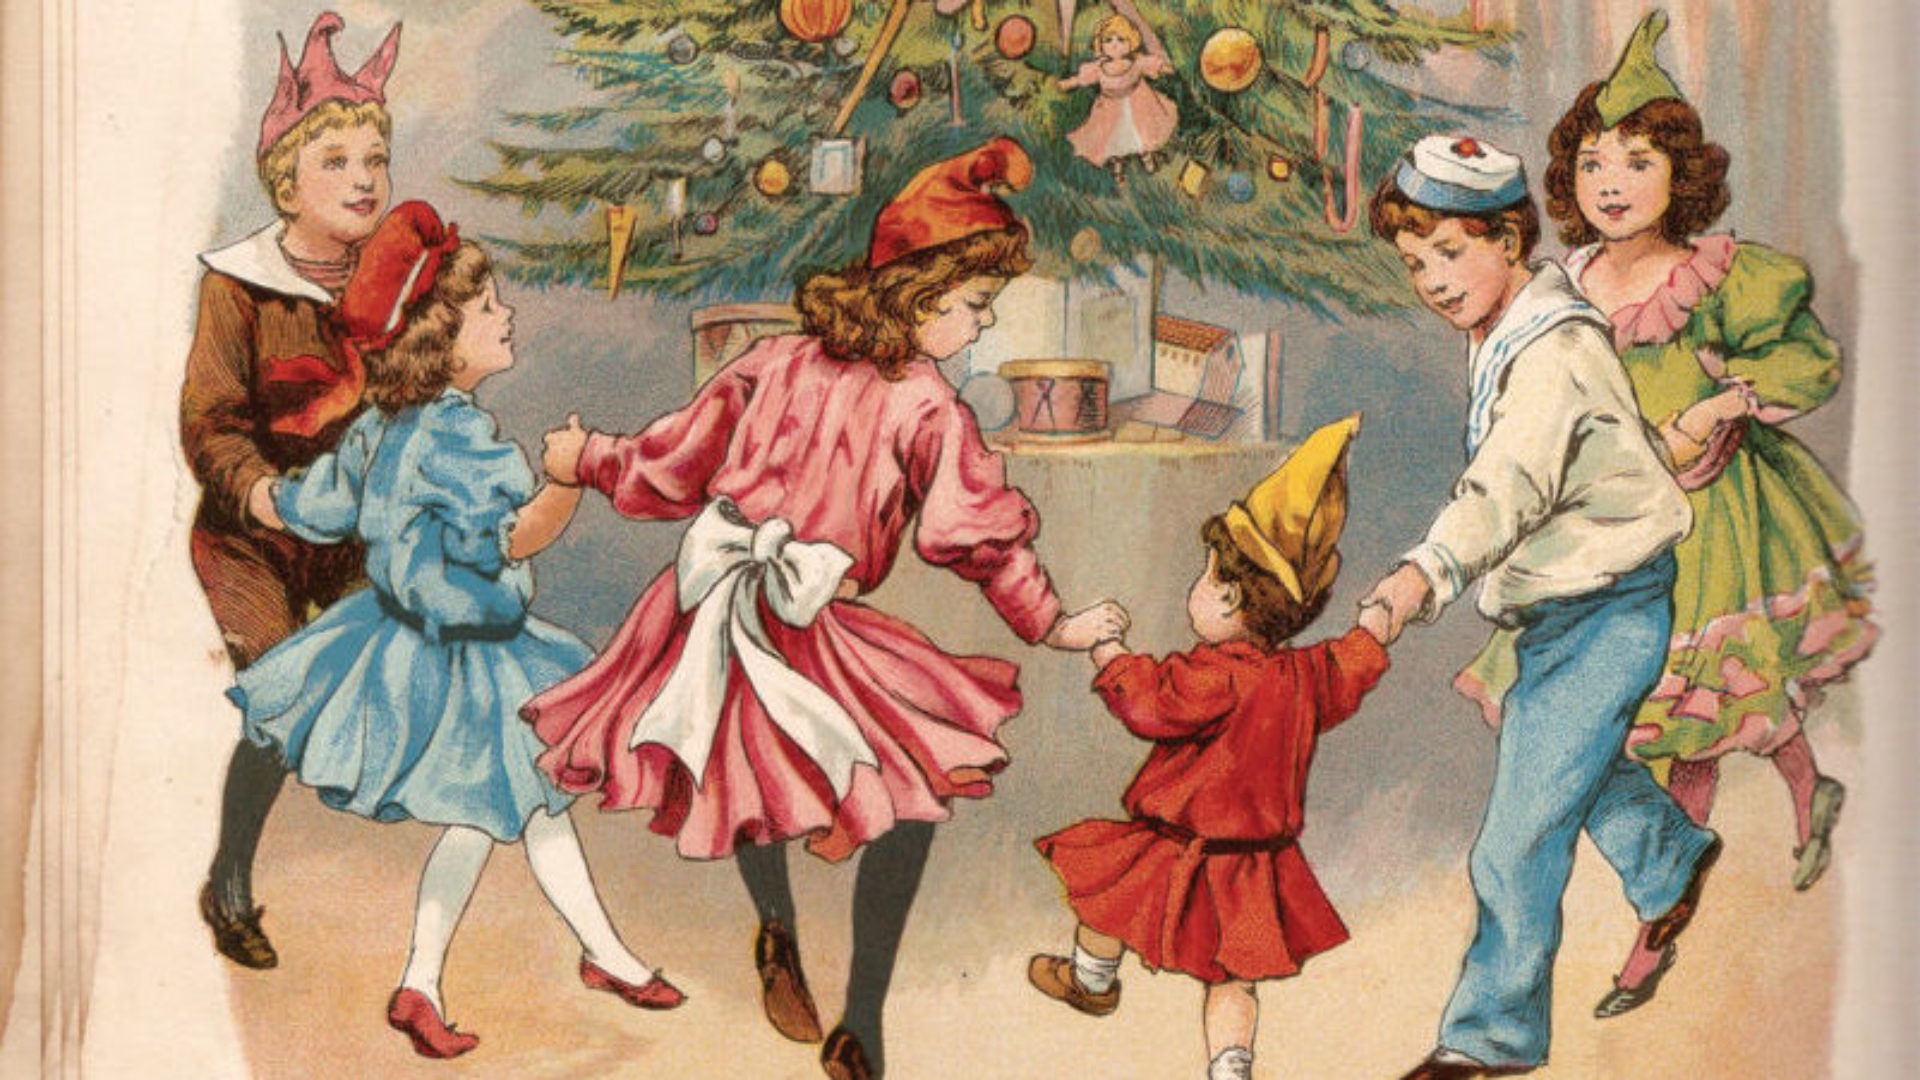 Le décompte jusqu’à Noël a commencé.
La Turlutaine partage cette magie
des fêtes en proposant 17 soirs pour
patienter ensemble jusqu’au réveillon.
(Photo : La Turlutaine)